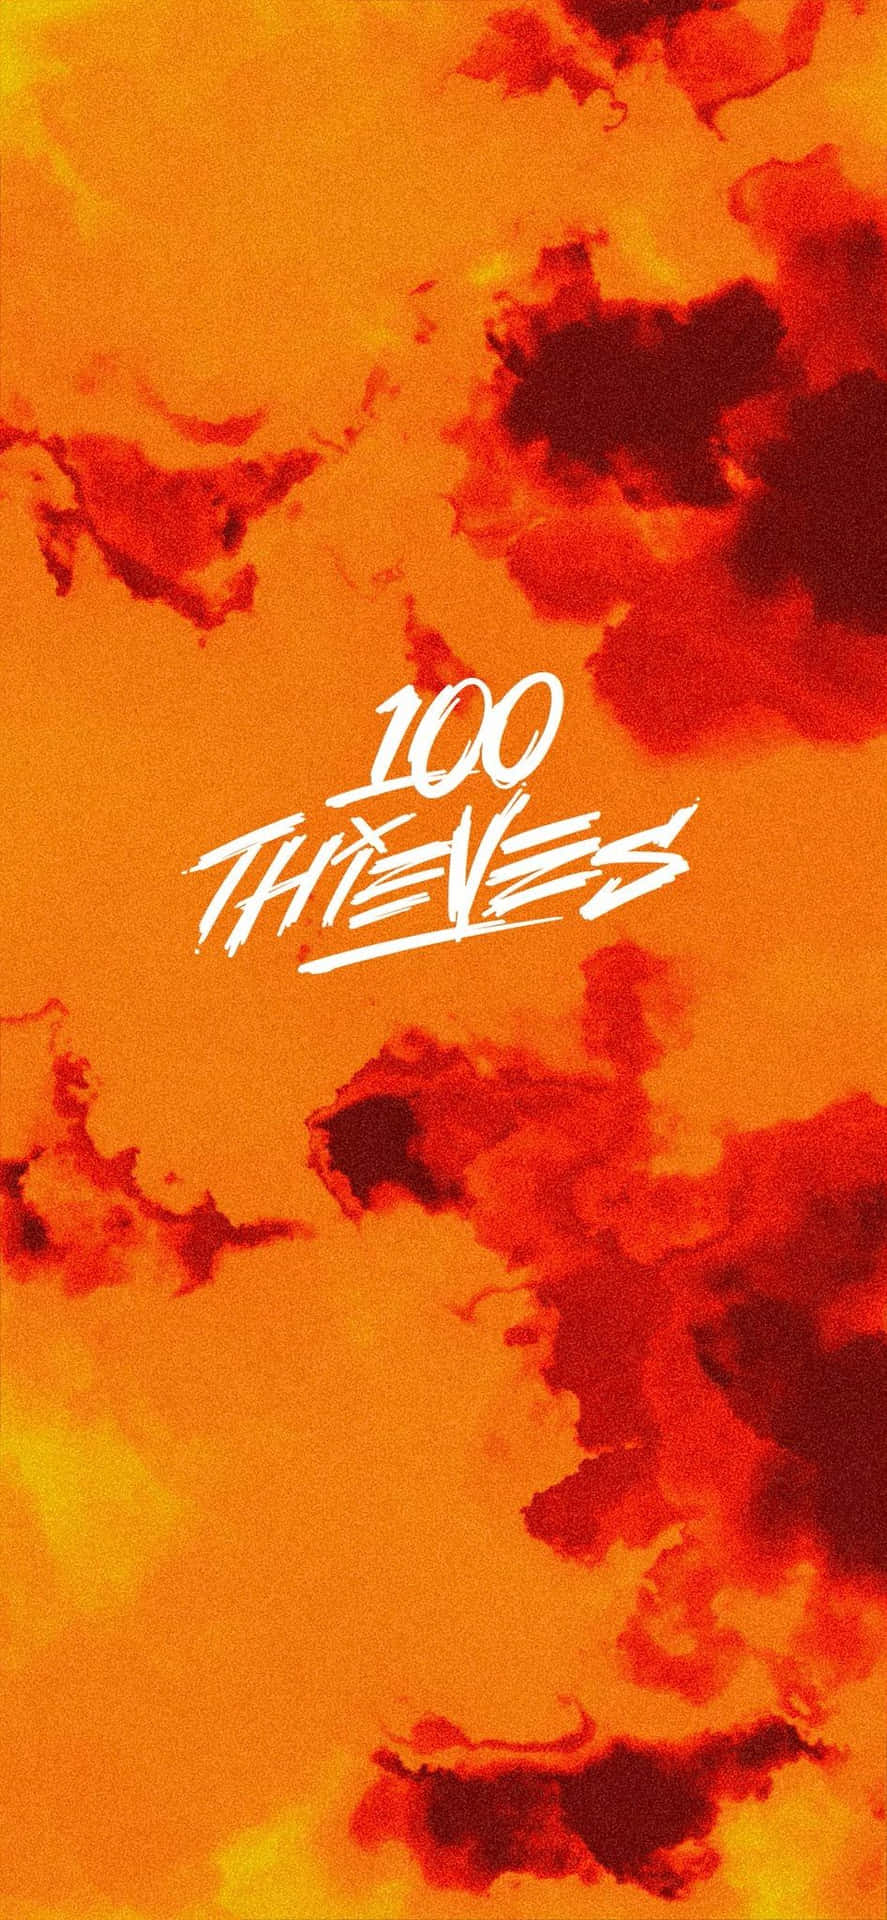 Välkommentill 100 Thieves Wallpaper